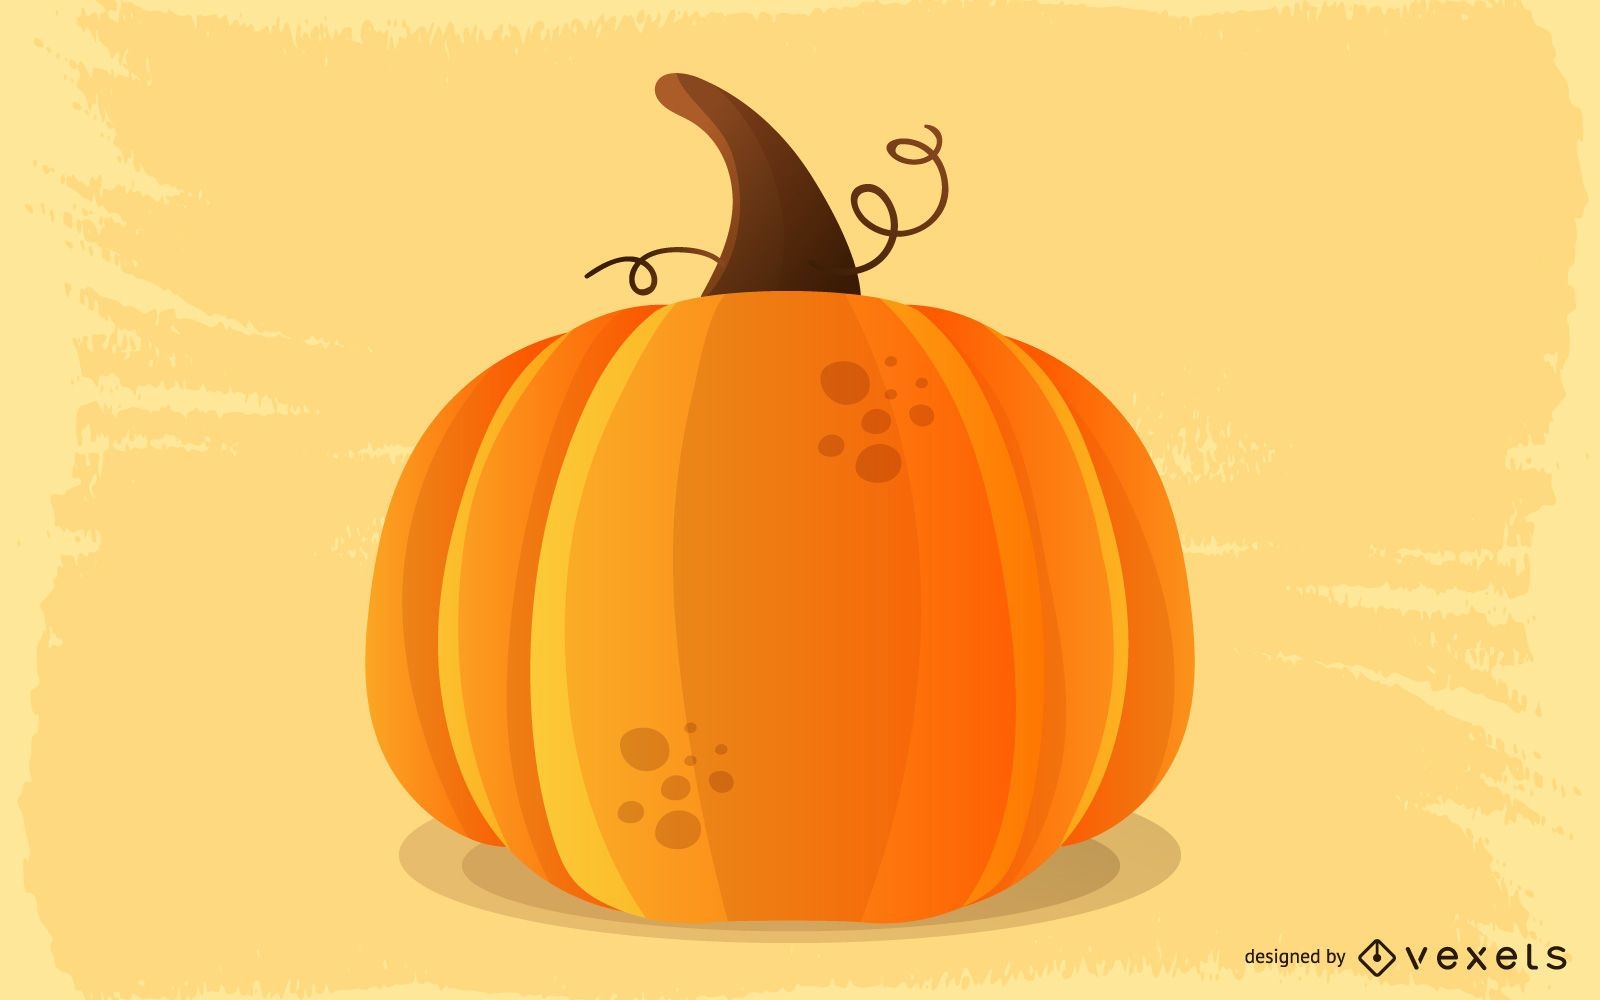 Pumpkin Vector Graphic